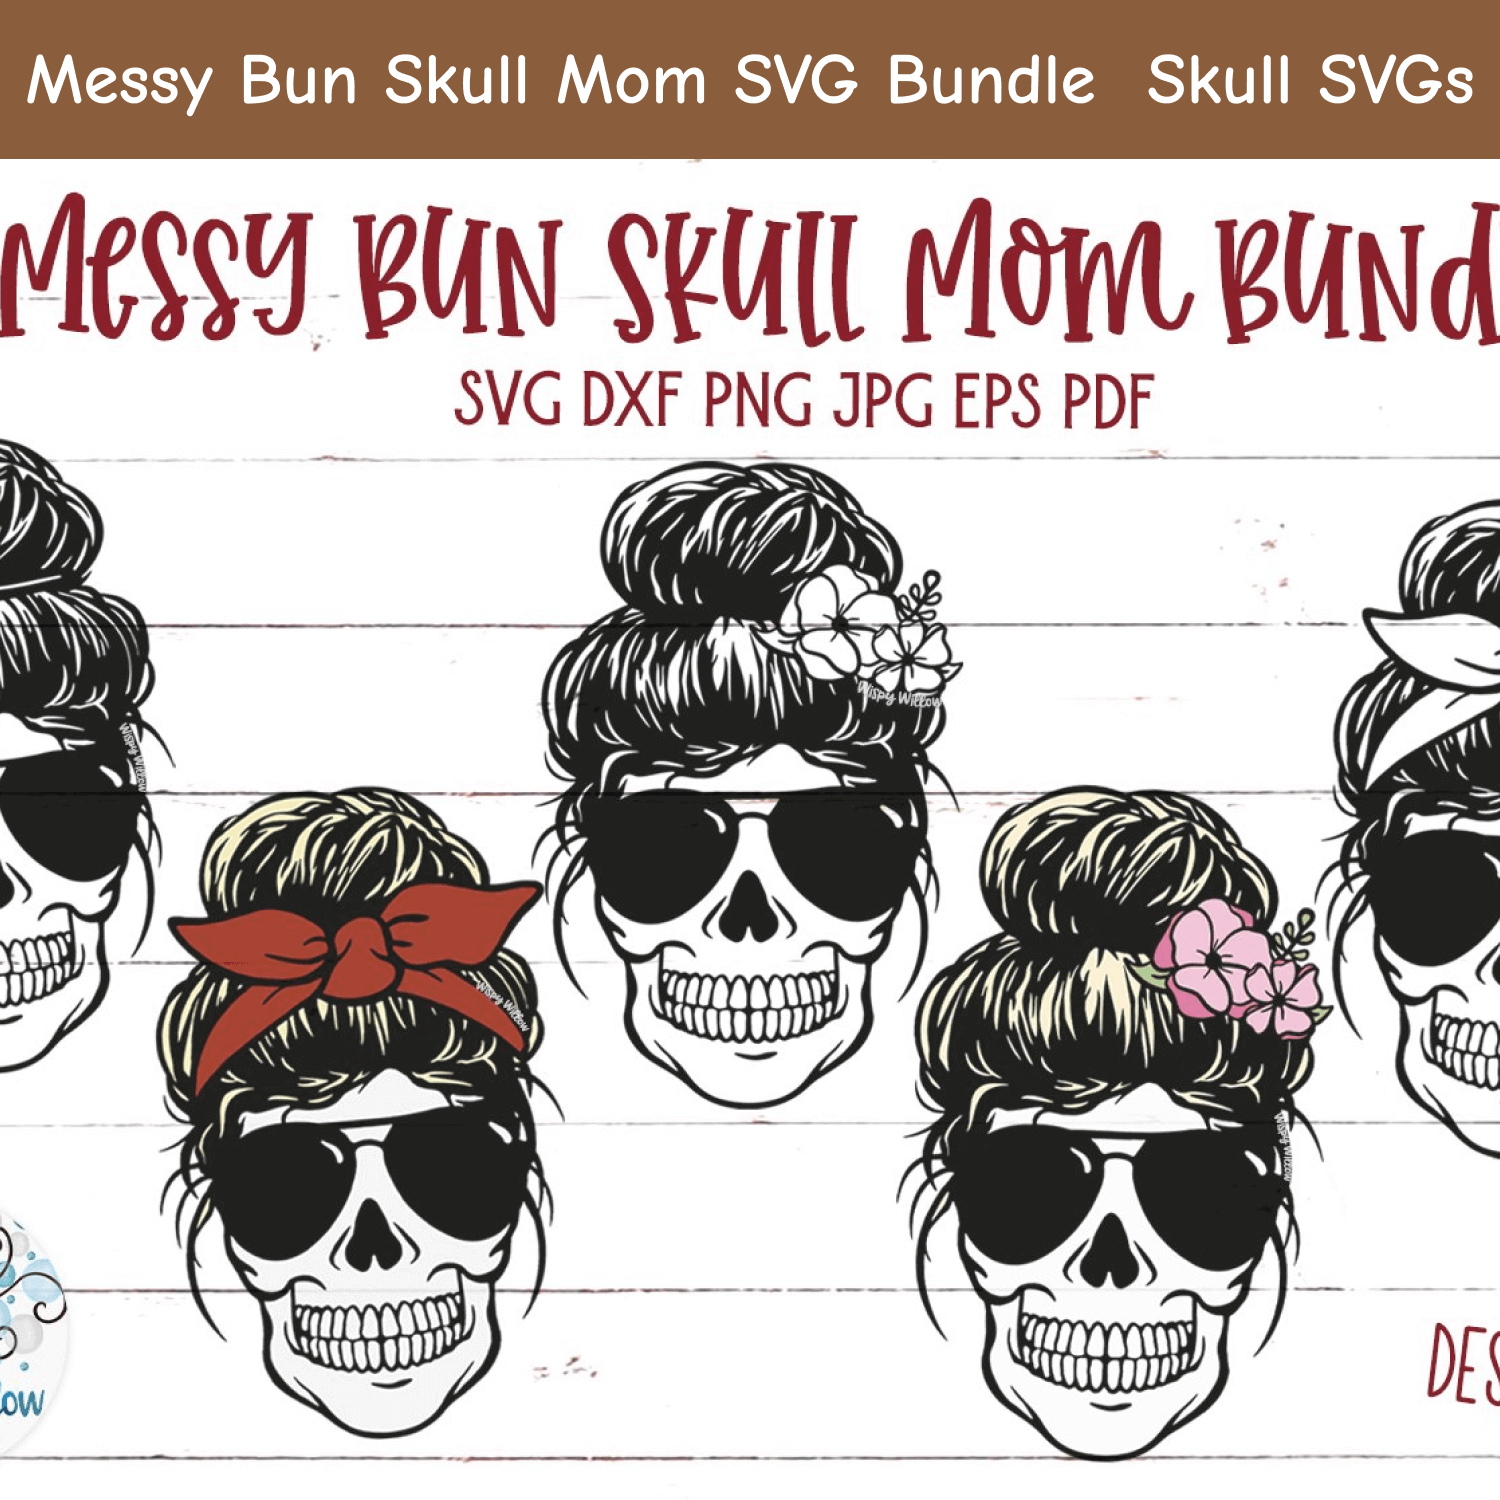 Messy Bun Skull Mom SVG.